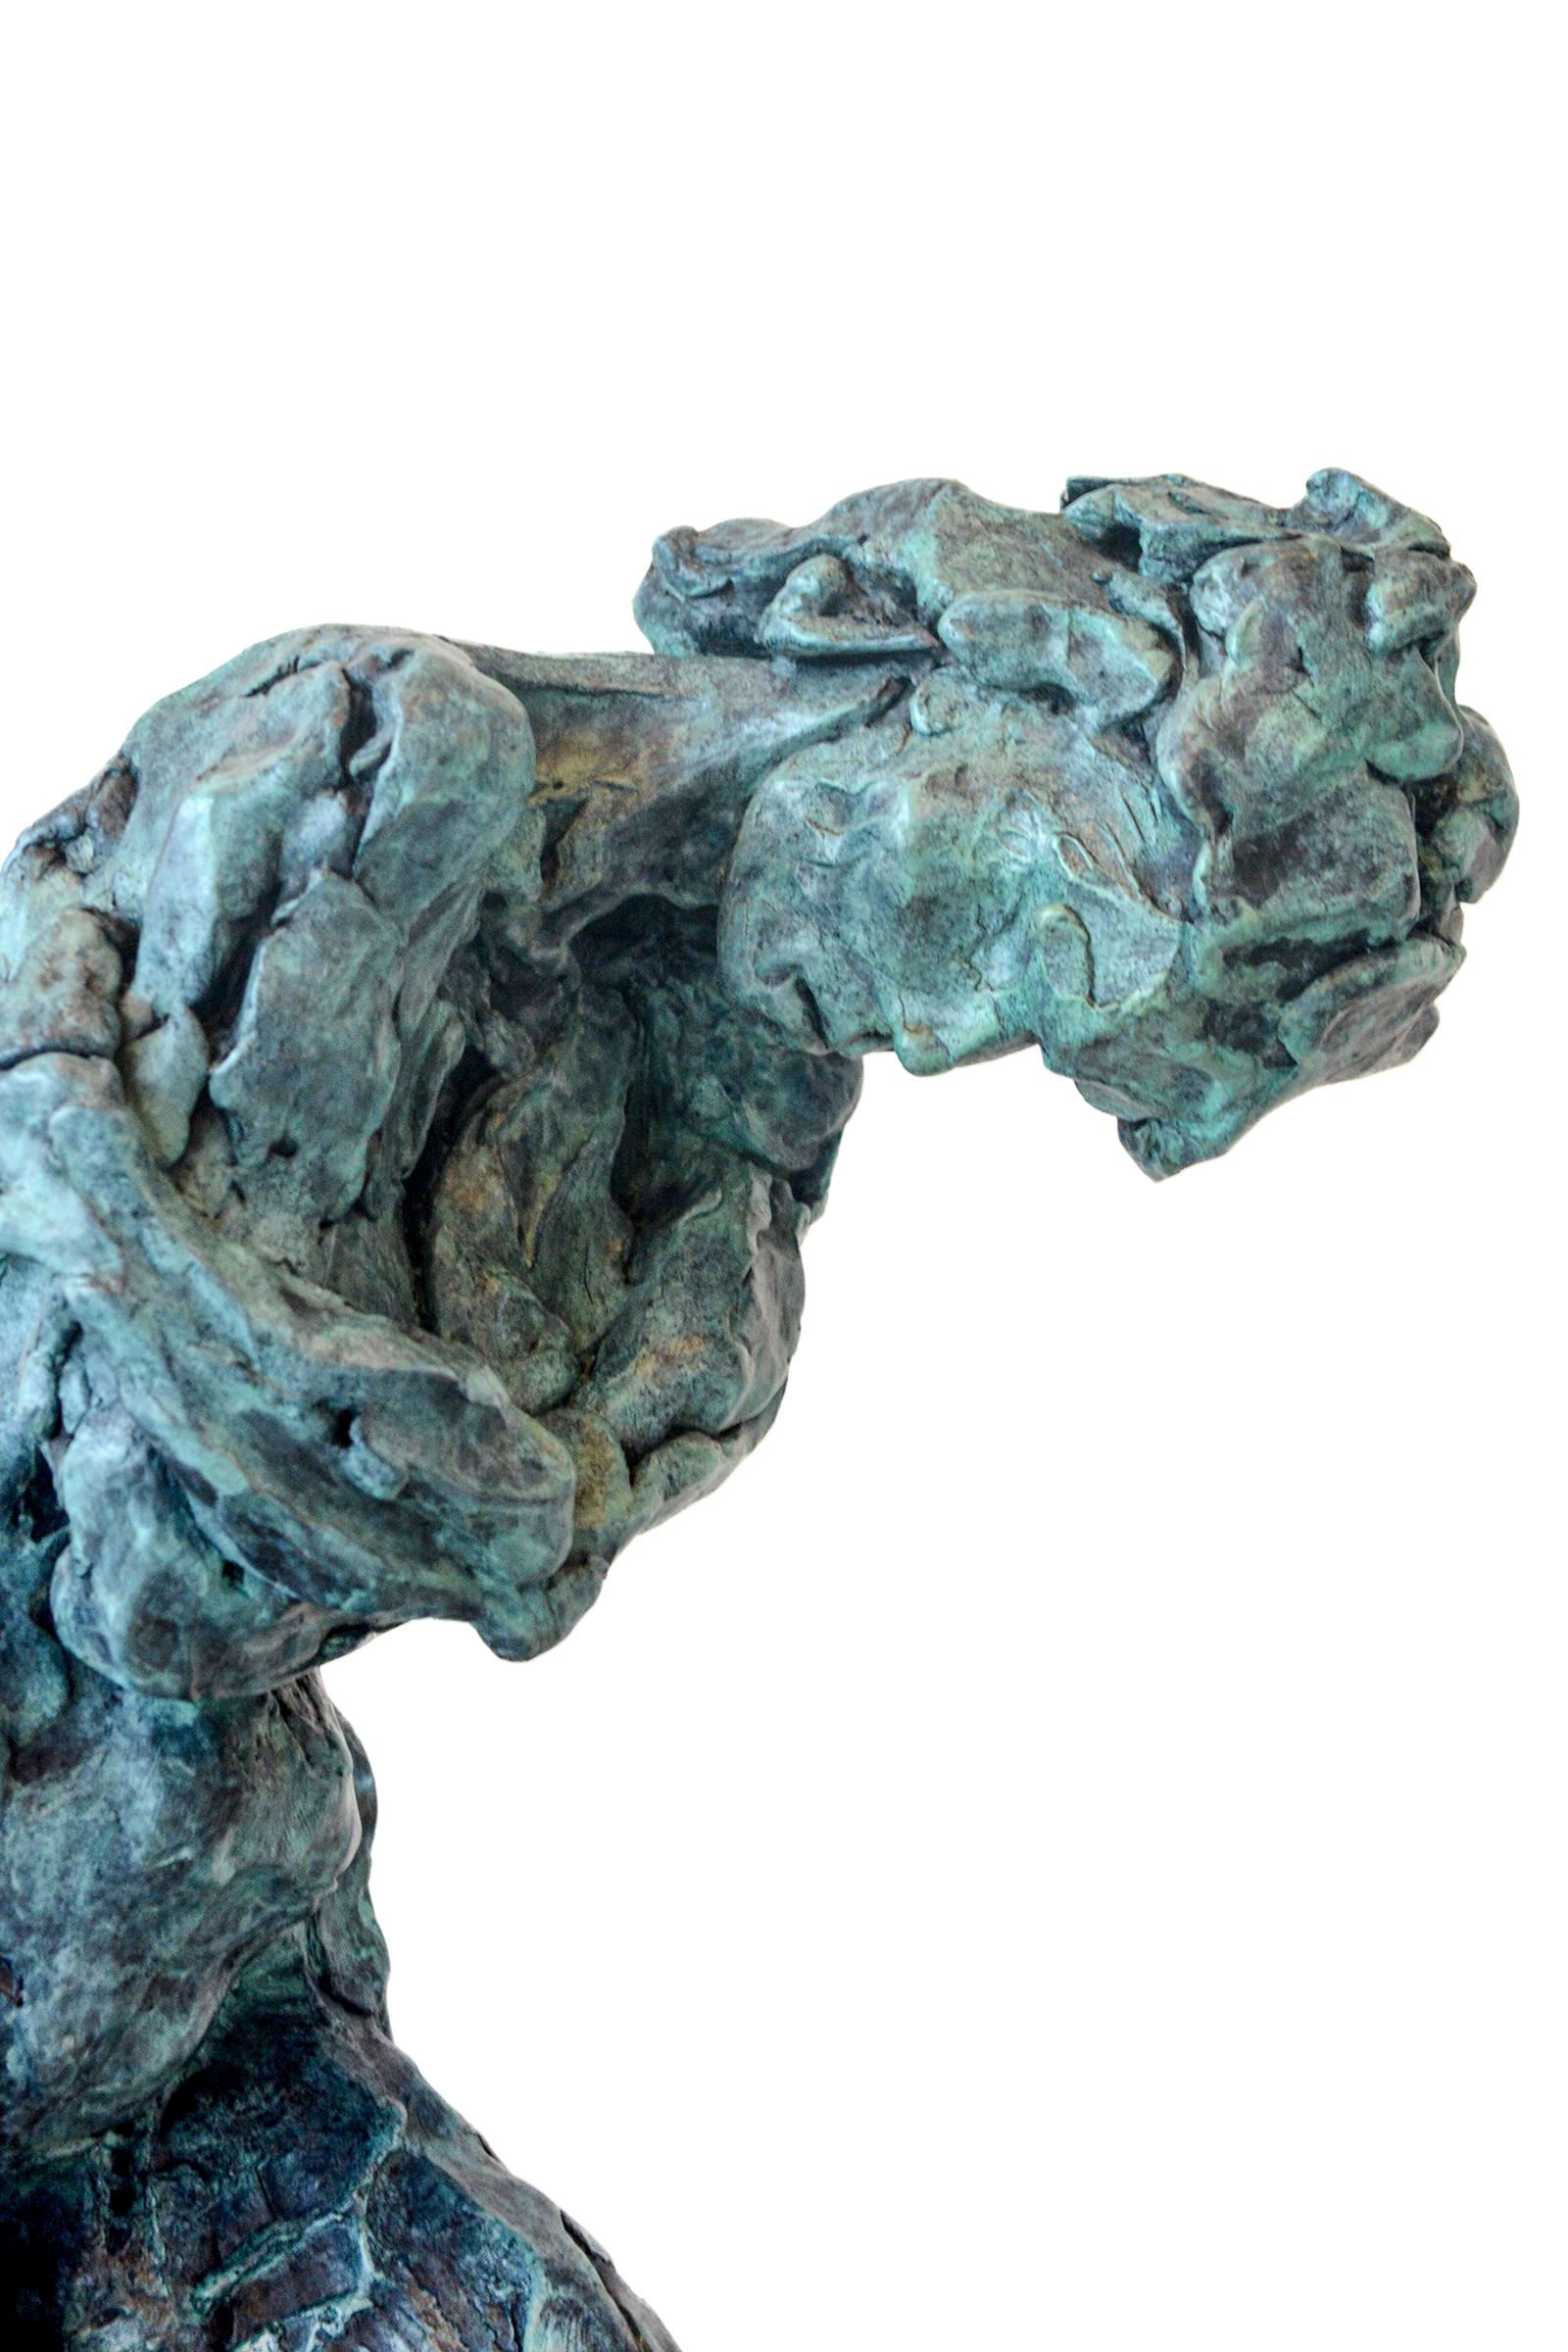 In dieser nachdenklichen Skulptur des kanadischen Künstlers Richard Tosczak sind die Gesten einer weiblichen Figur mit gebeugtem Kopf und verschränkten Armen in Bronze festgehalten. Bekannt für seine schönen figurativen Arbeiten, hat dieses Stück